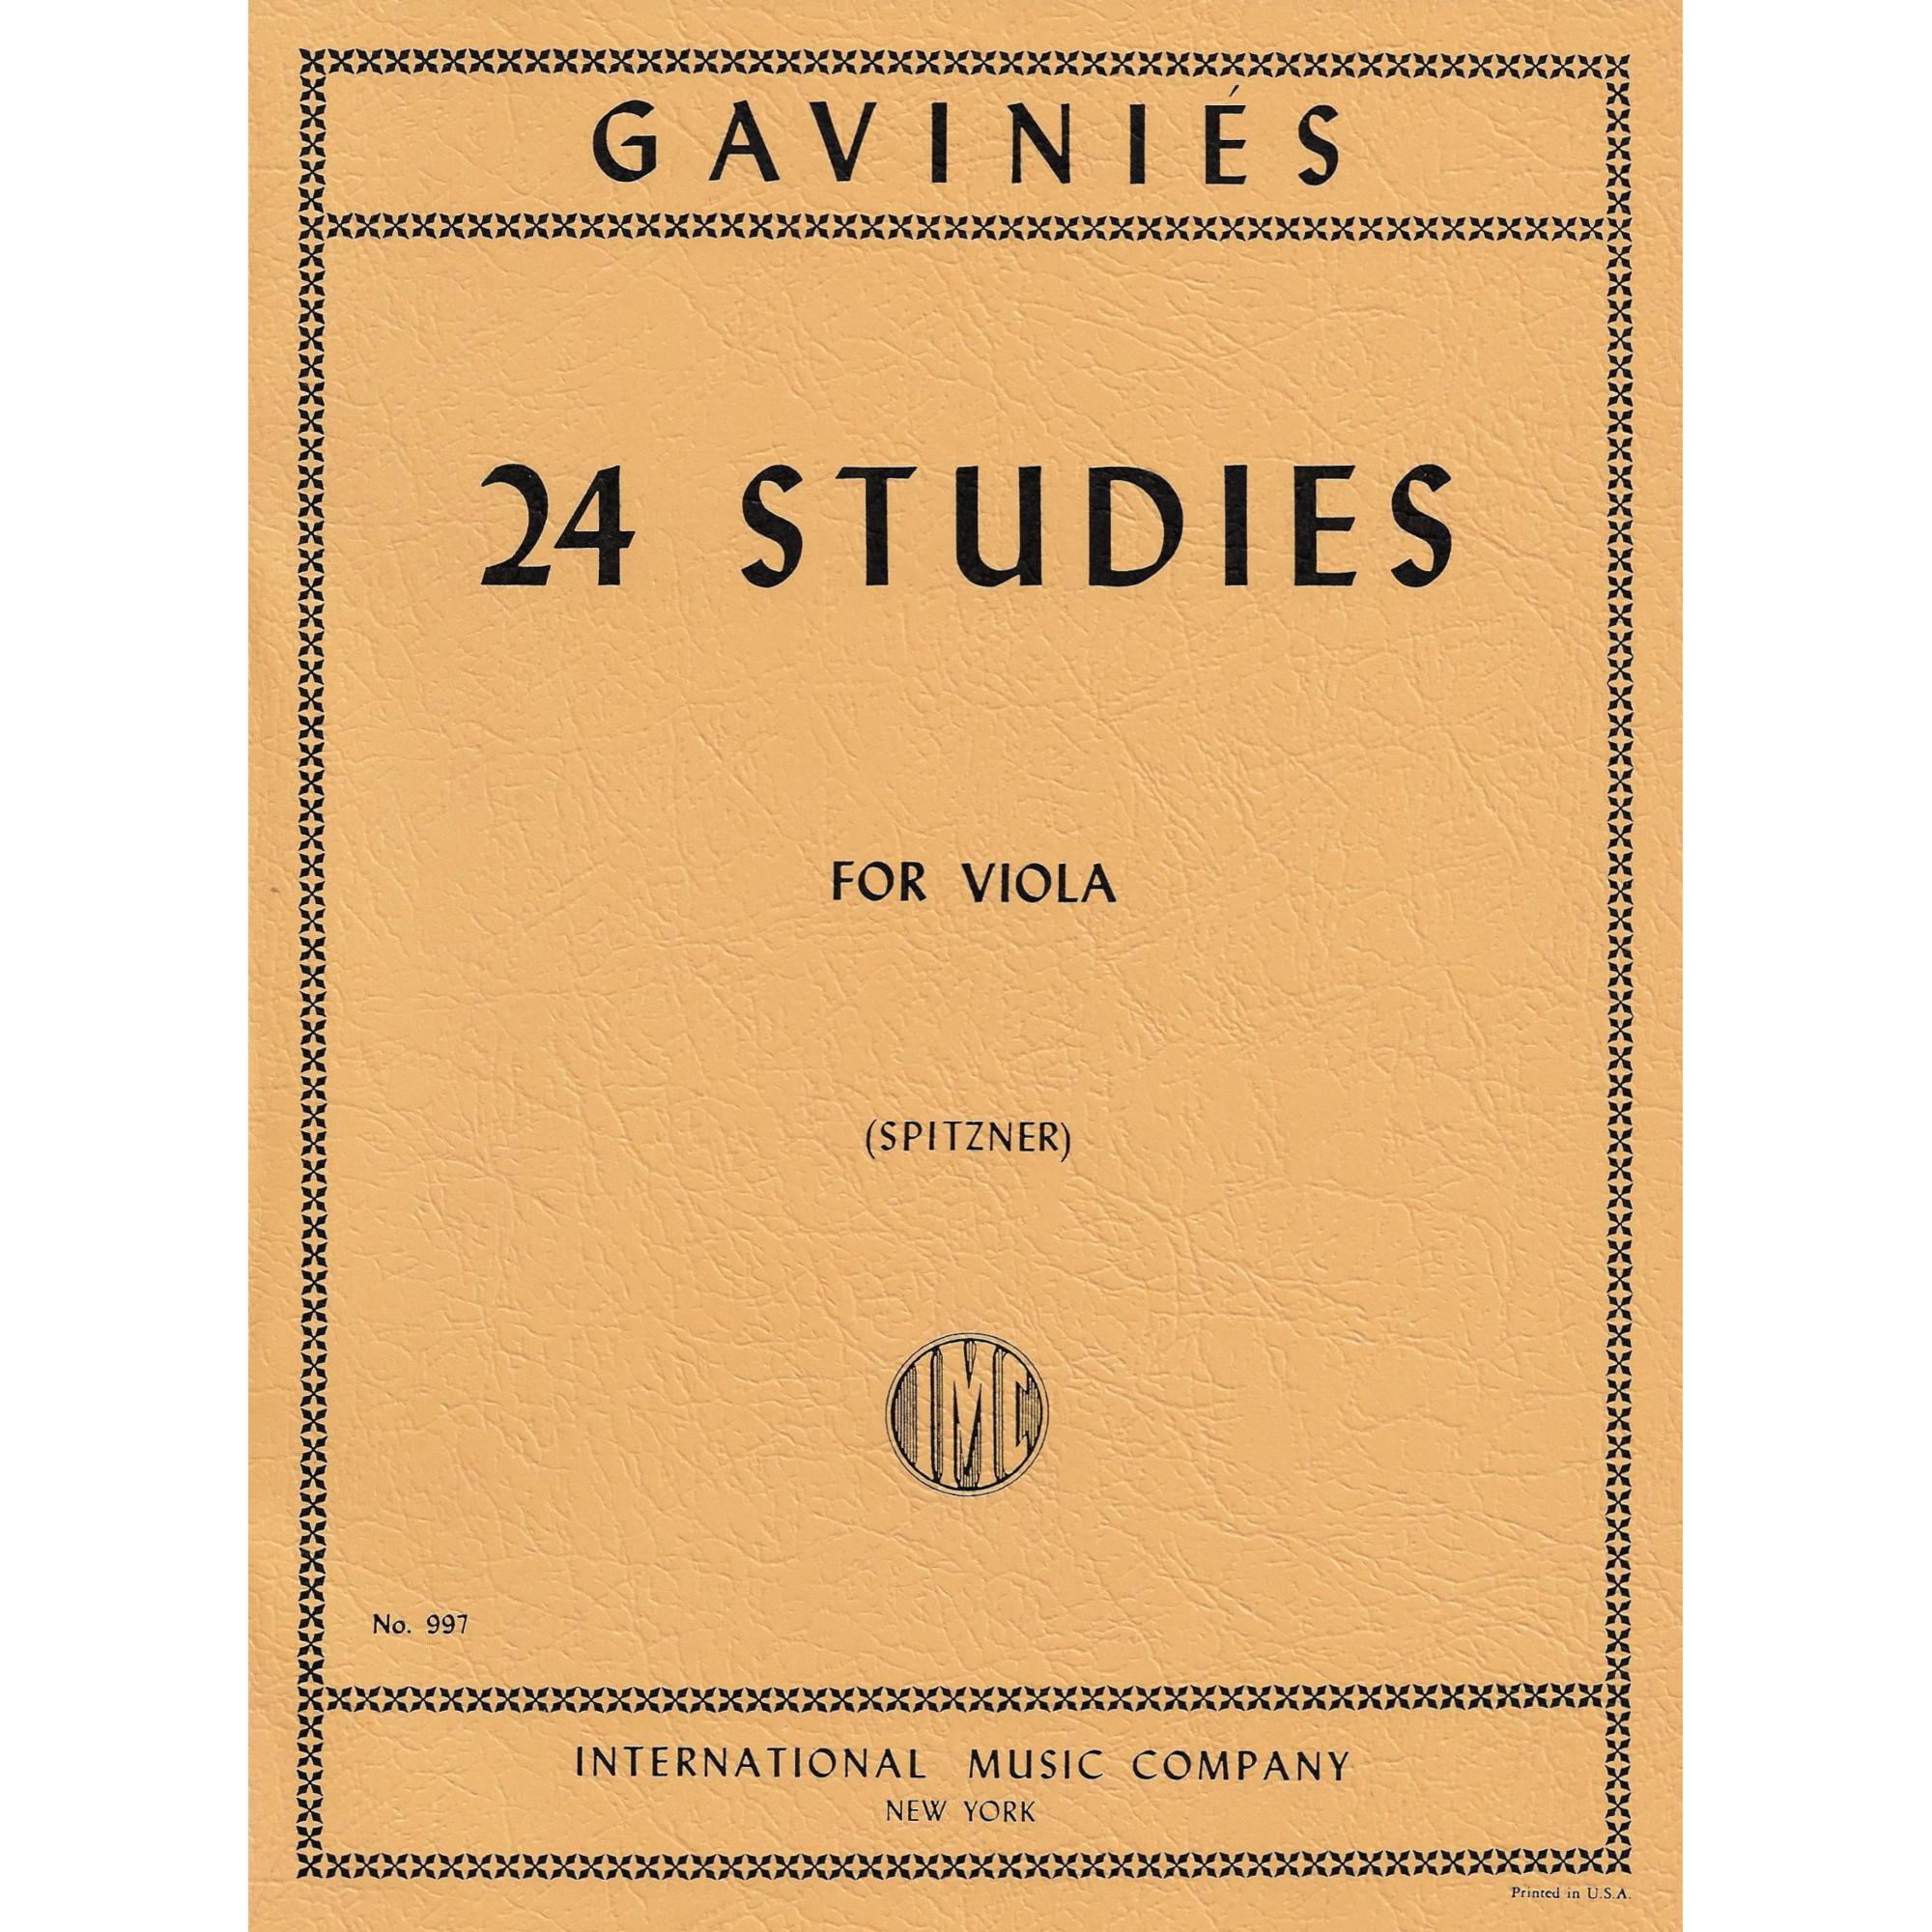 Gavinies -- 24 Studies for Viola